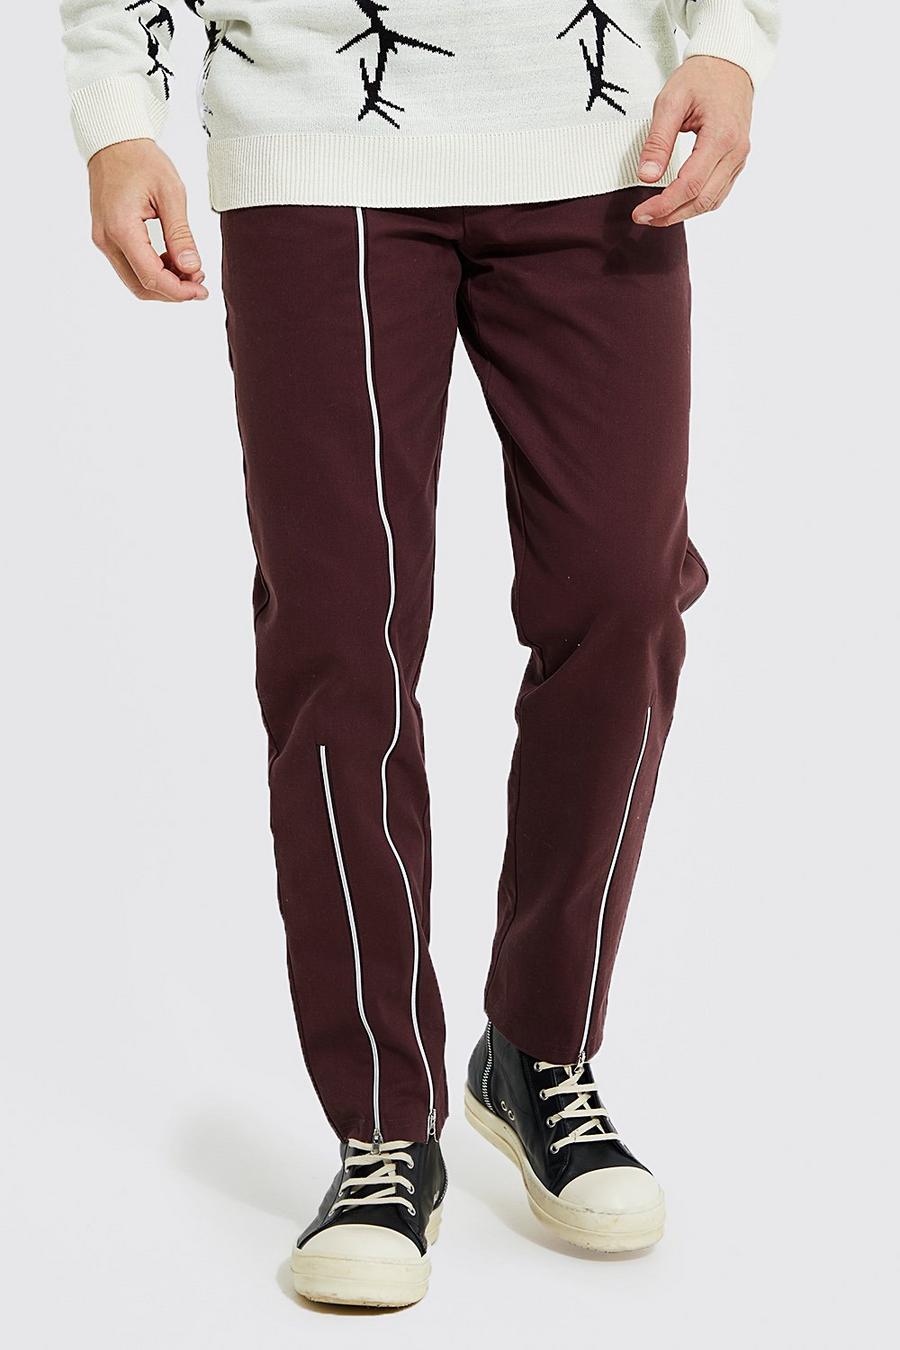 Pantalon droit à ourlets zippés, Chocolate marron